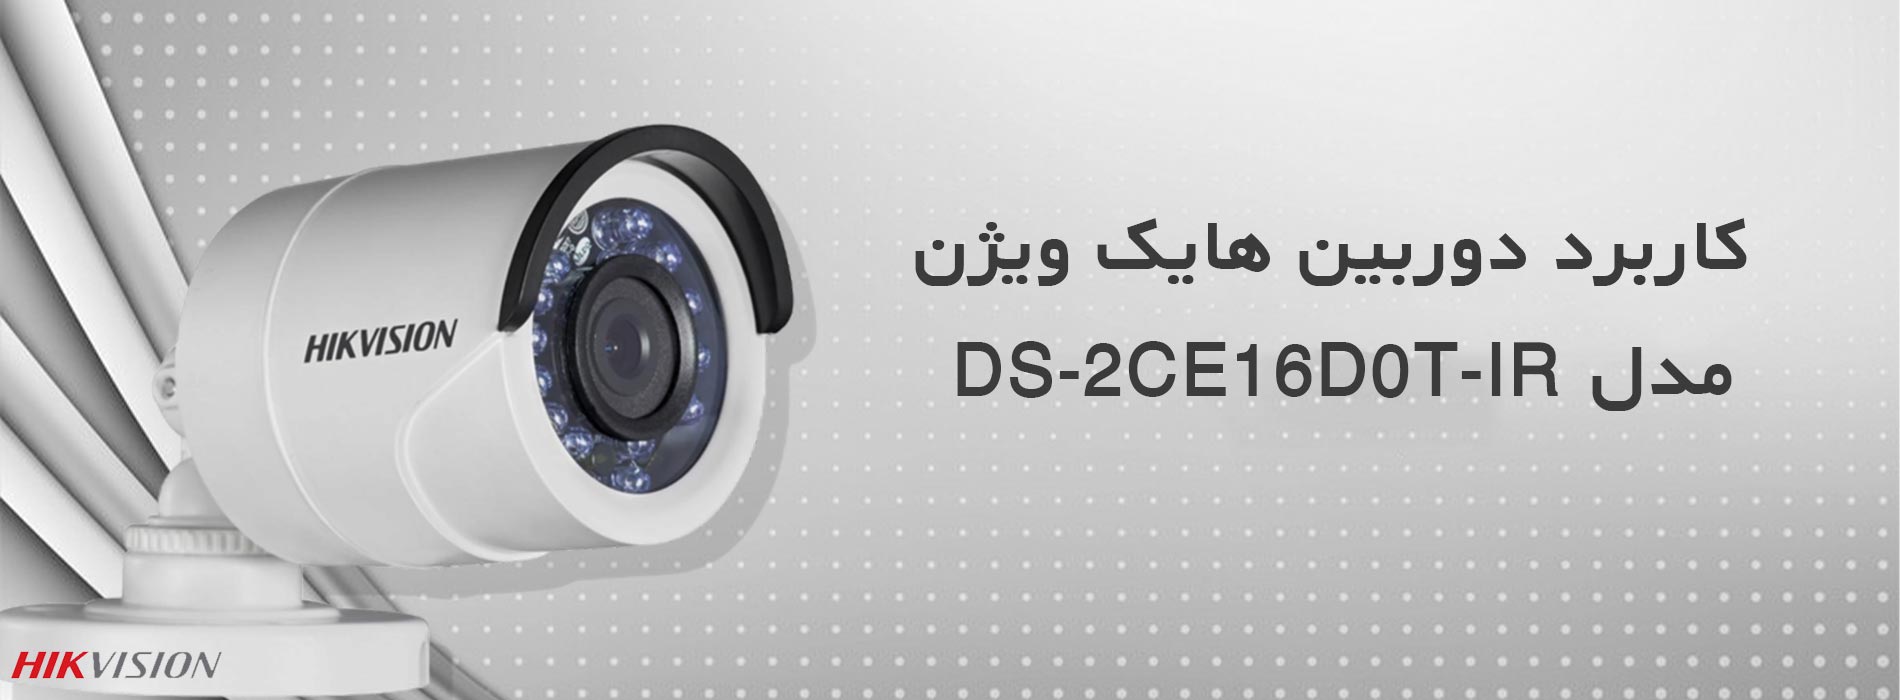 کاربرد دوربین هایک ویژن مدل DS-2CE16D0T-IR